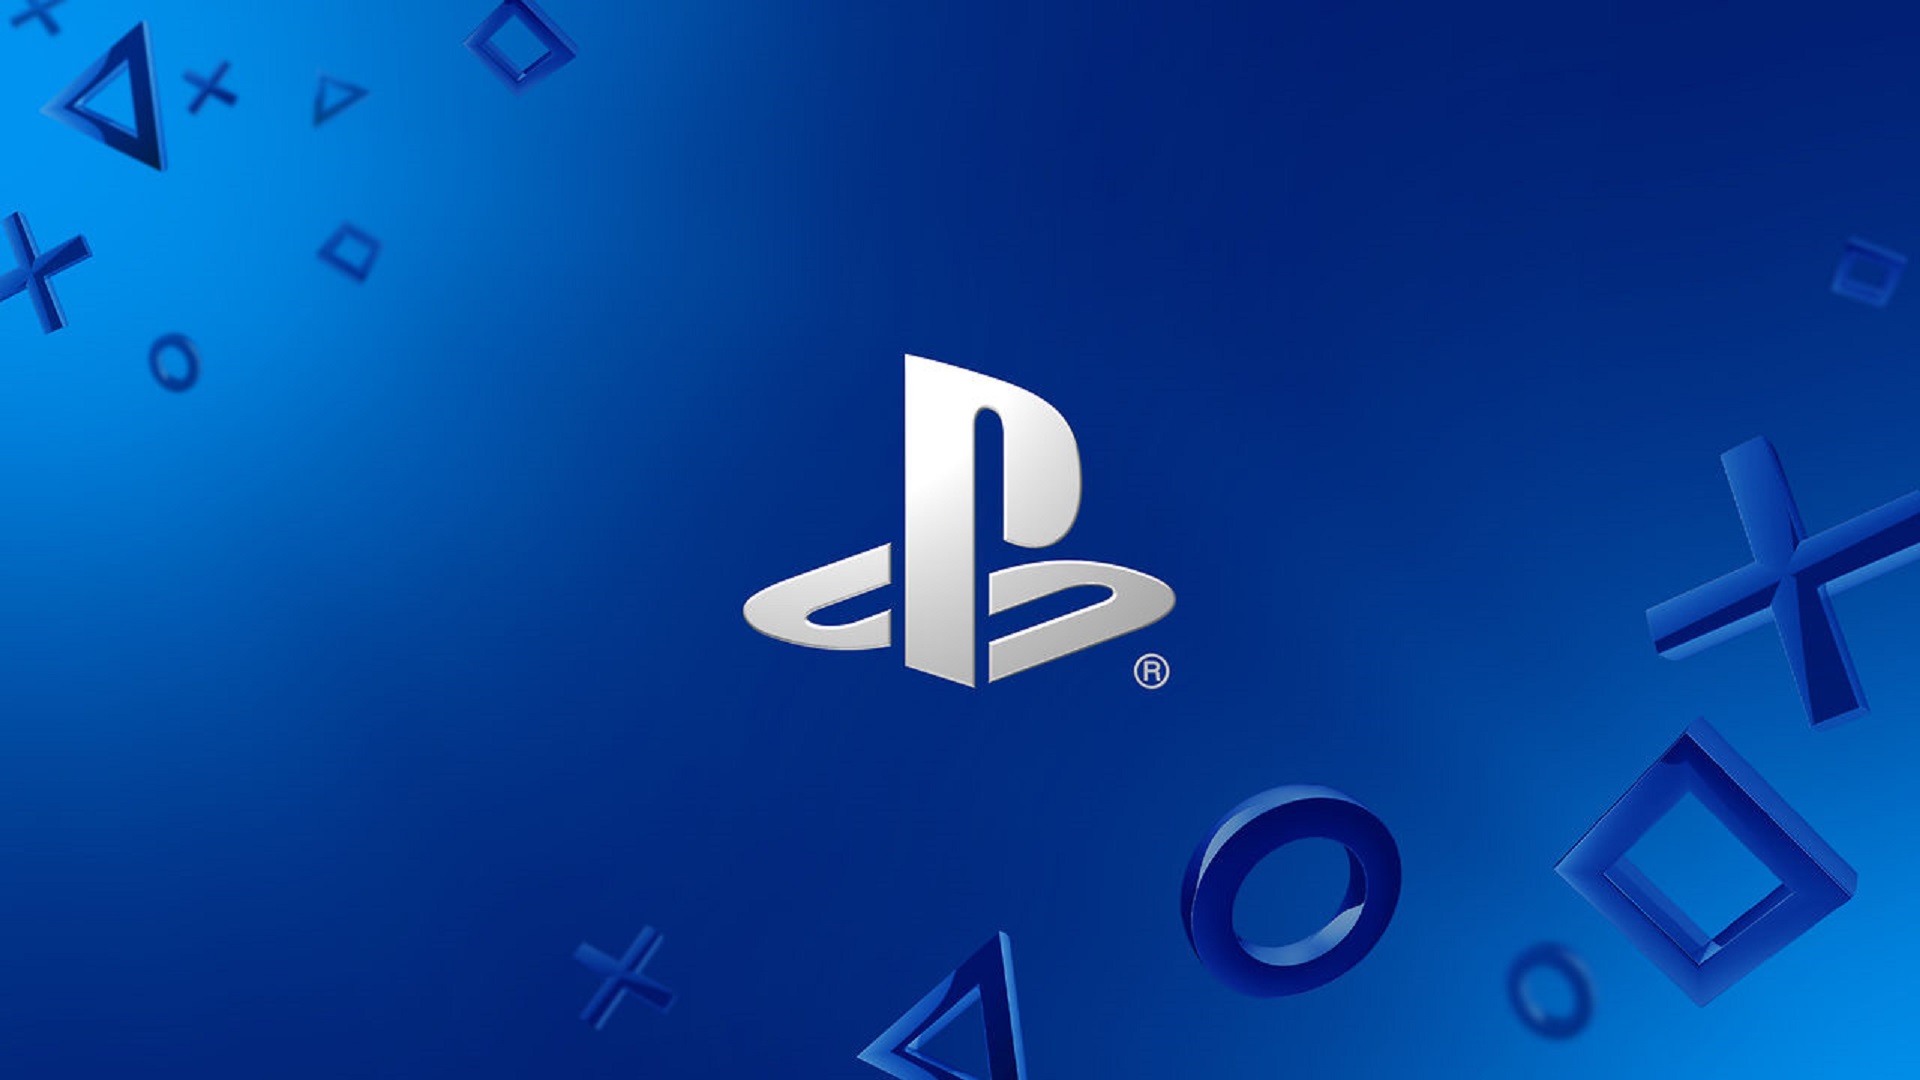 playstation white logo blue background 1